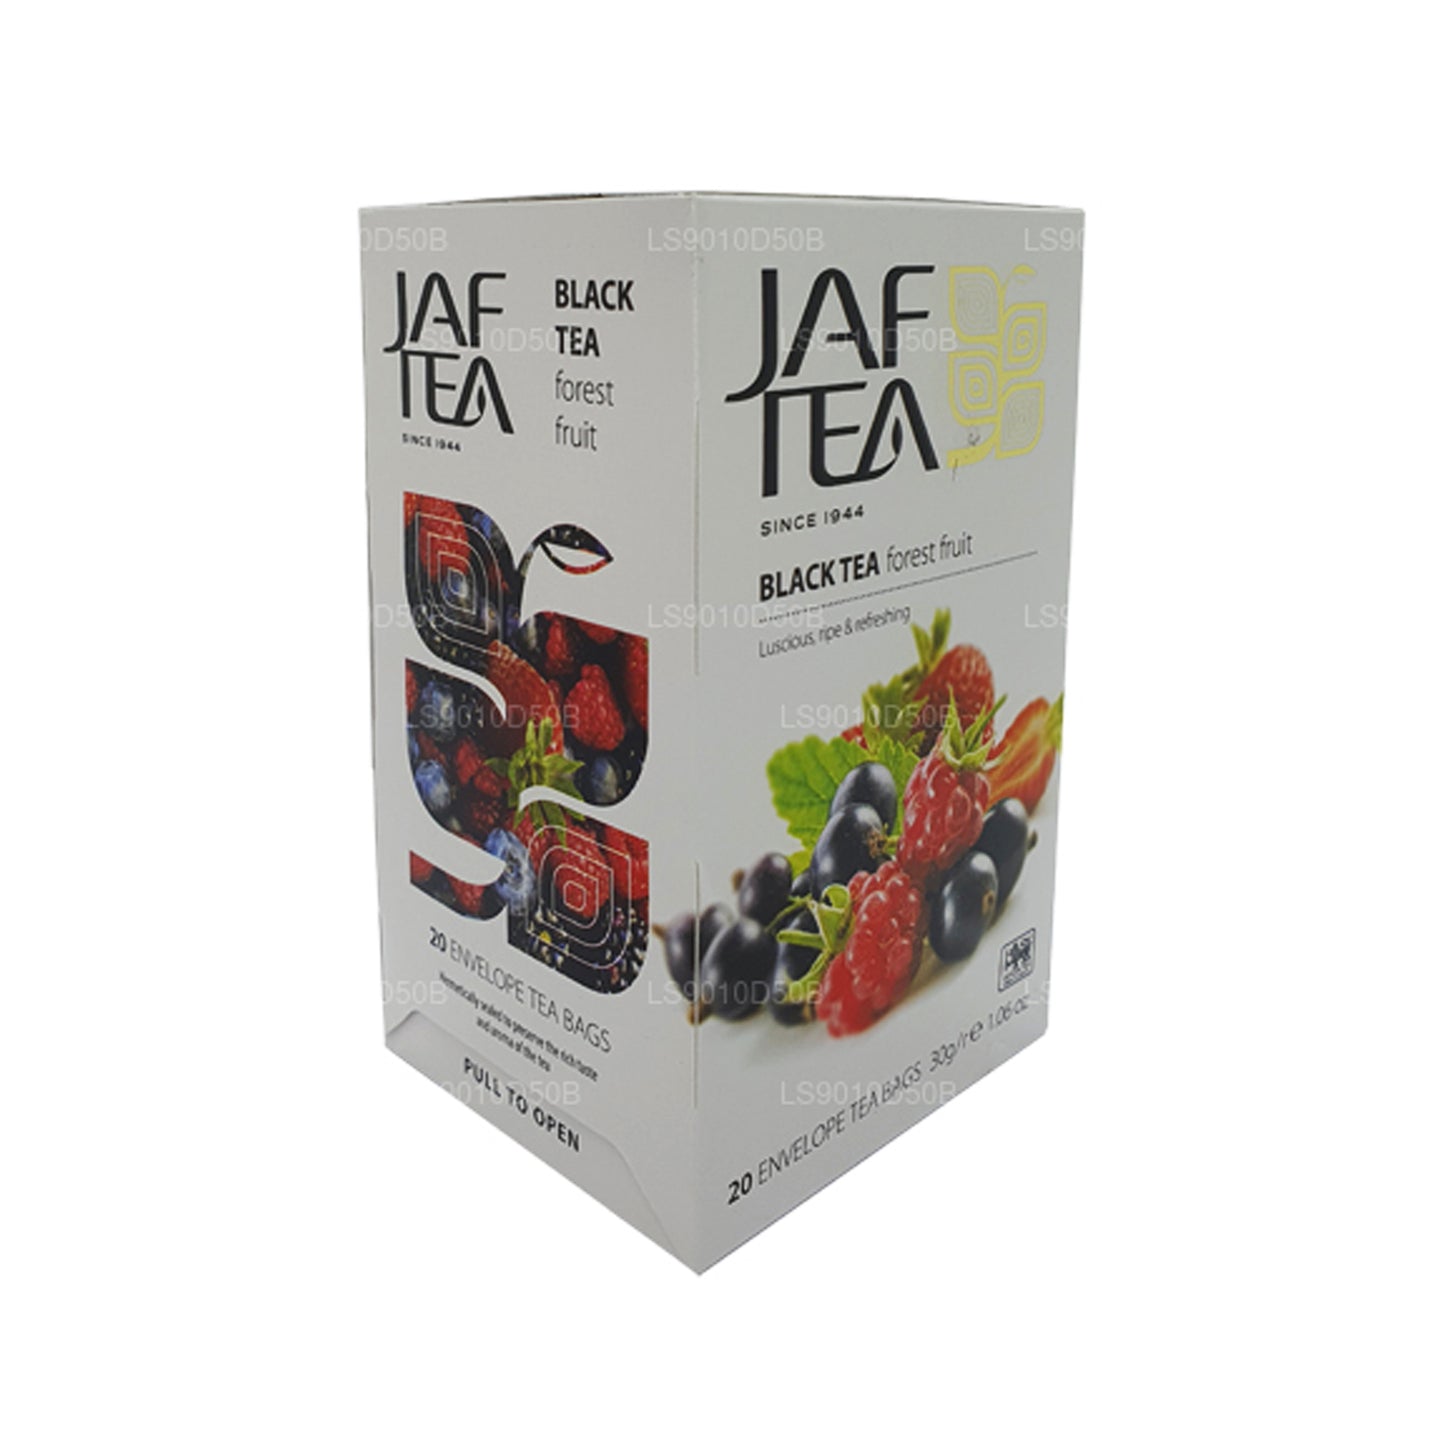 Jaf Çay Saf Meyveler Koleksiyonu Siyah Çay Orman Meyvesi (30g) 20 Çay Poşeti